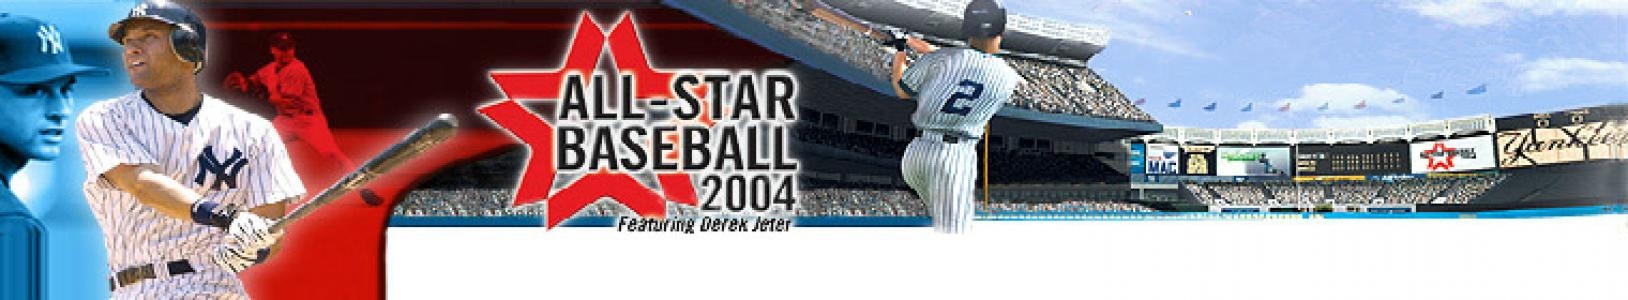 All-Star Baseball 2004 banner